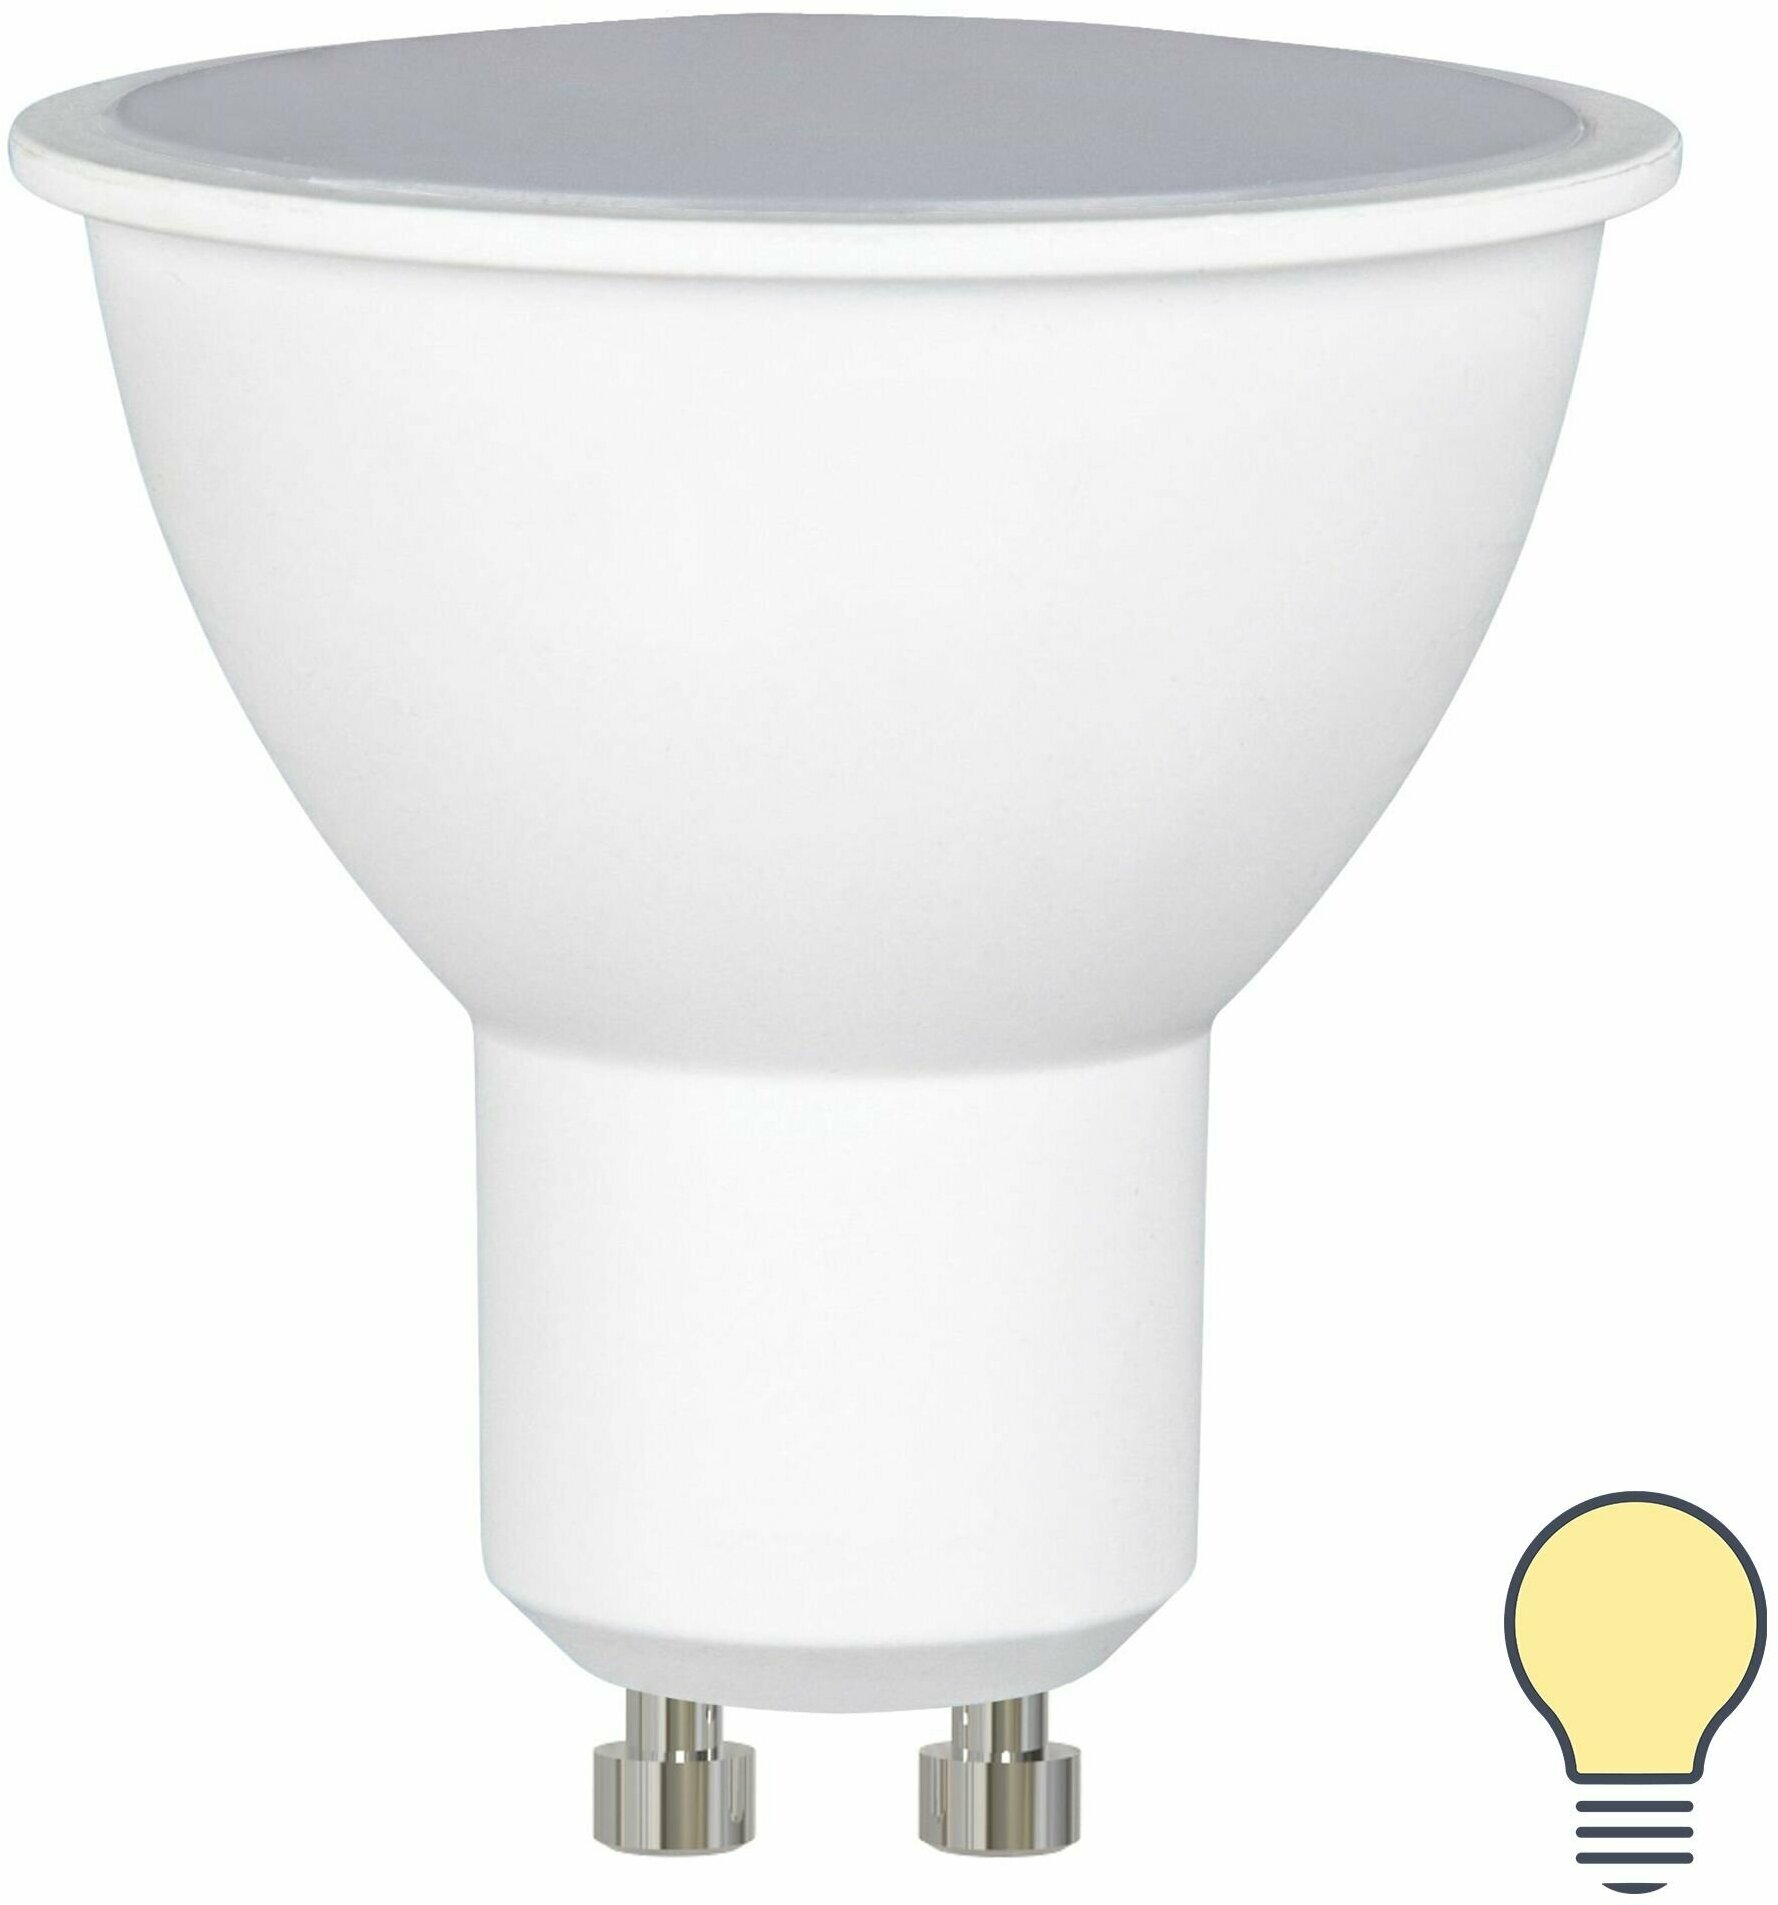 Лампа светодиодная Volpe Norma GU10 175-250 В 10 Вт спот 800 лм теплый белый цвет света